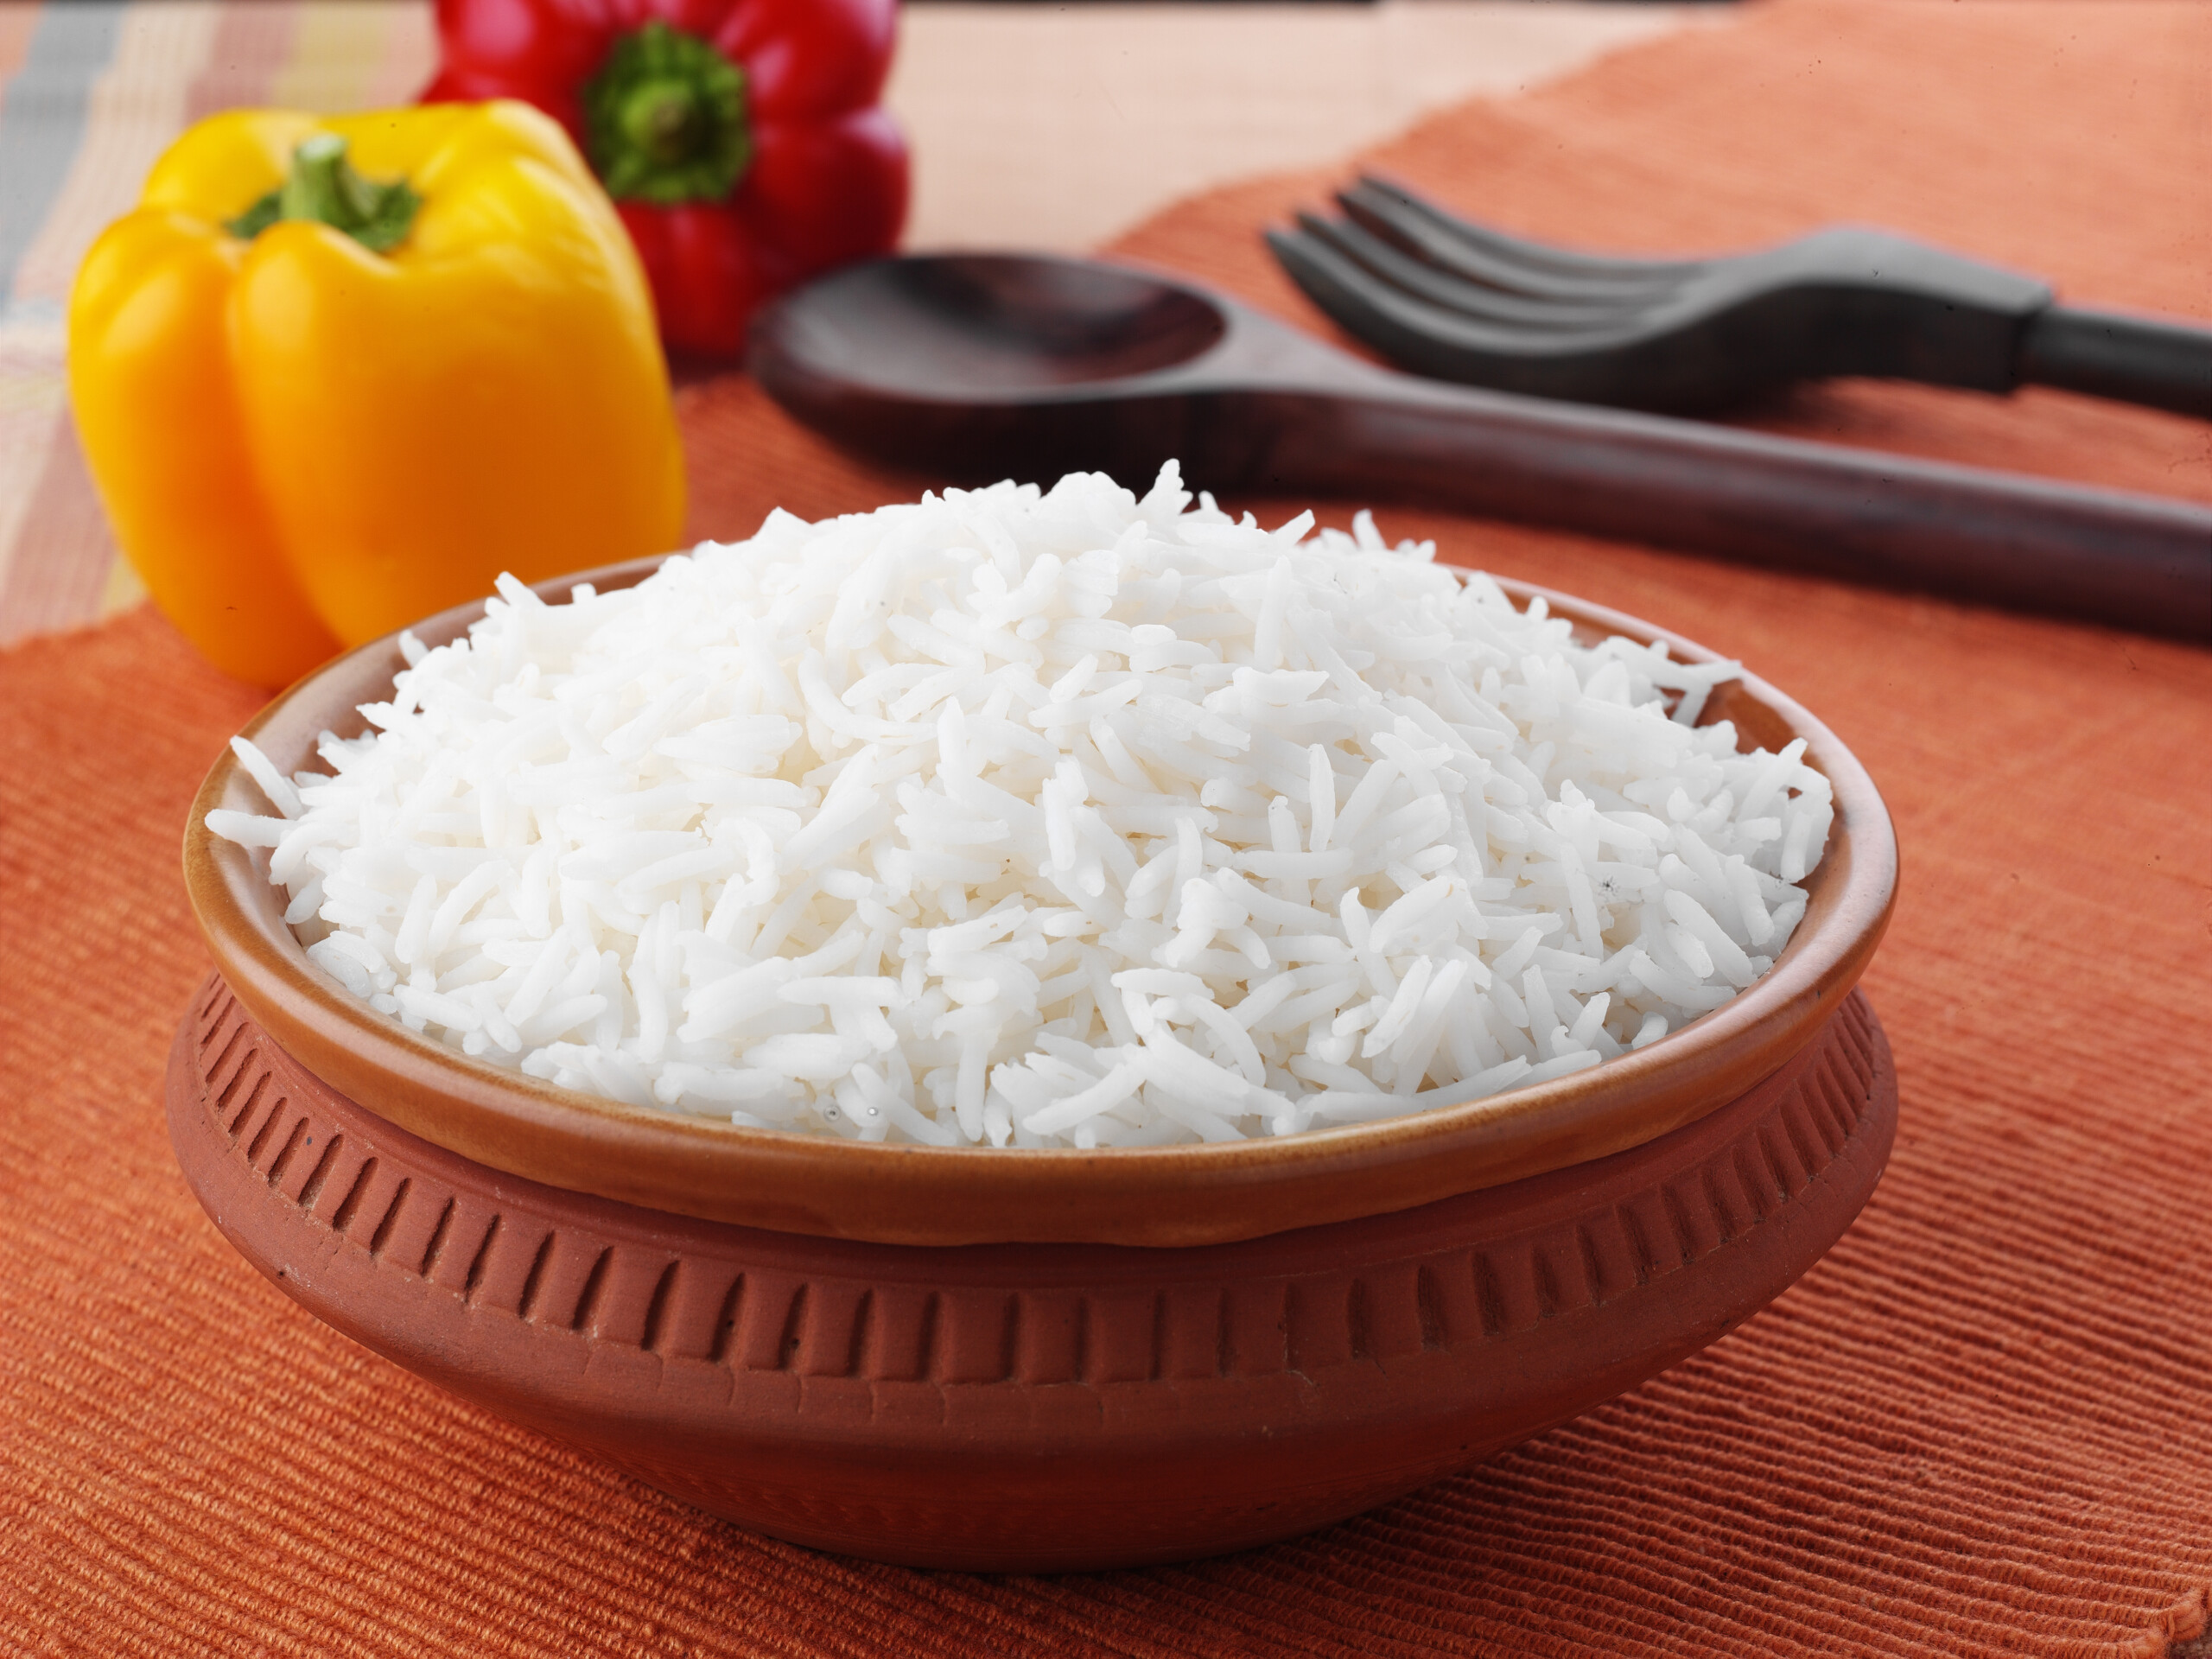 arroz branco é tão prejudicial quanto o açúcar